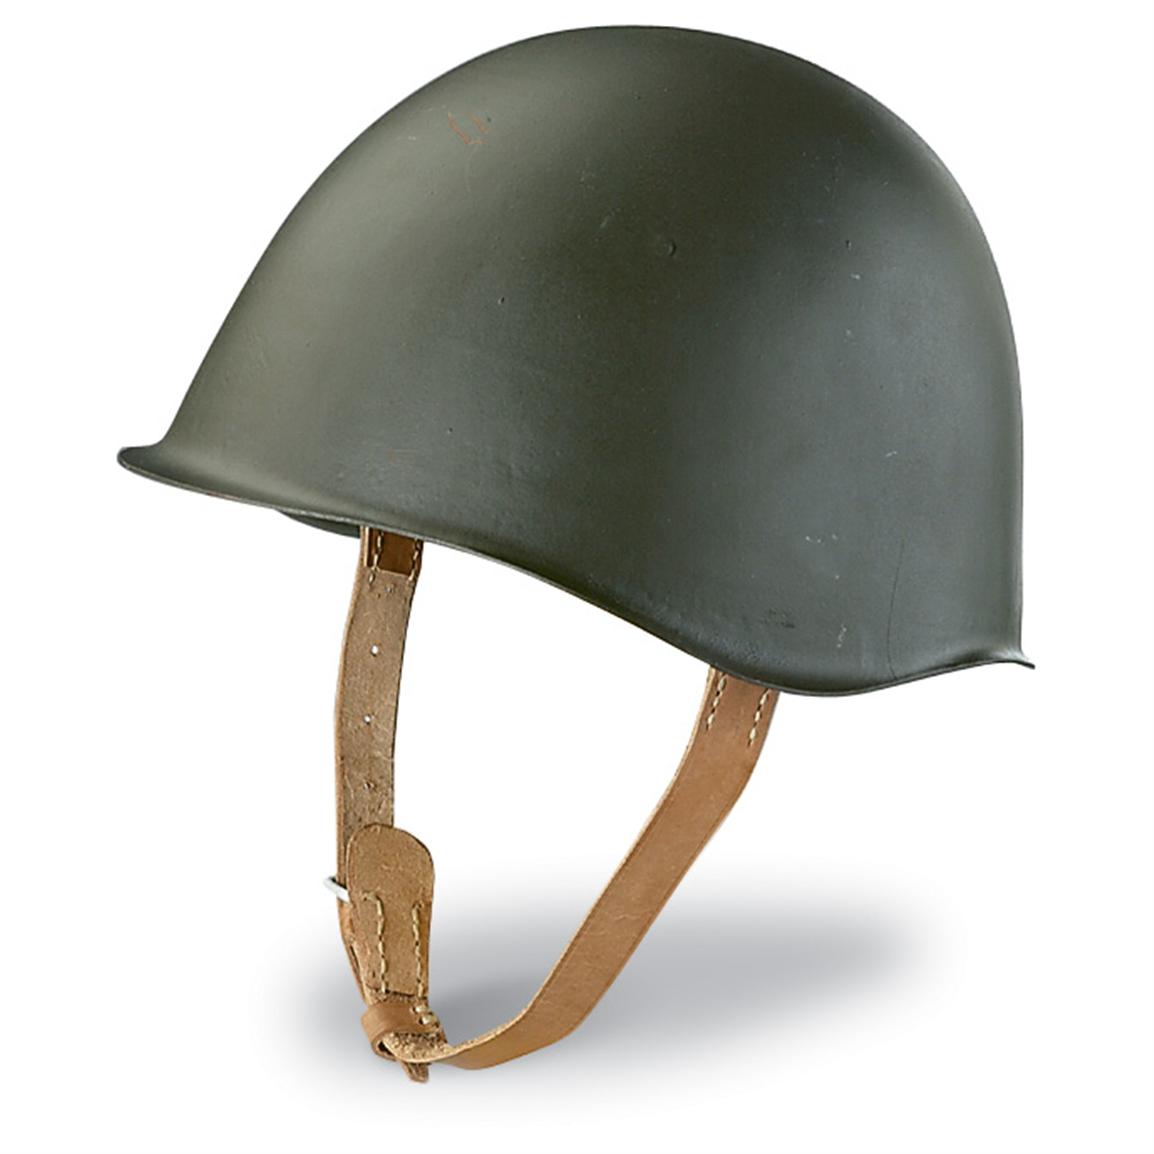 Polish Military Surplus Steel Helmet